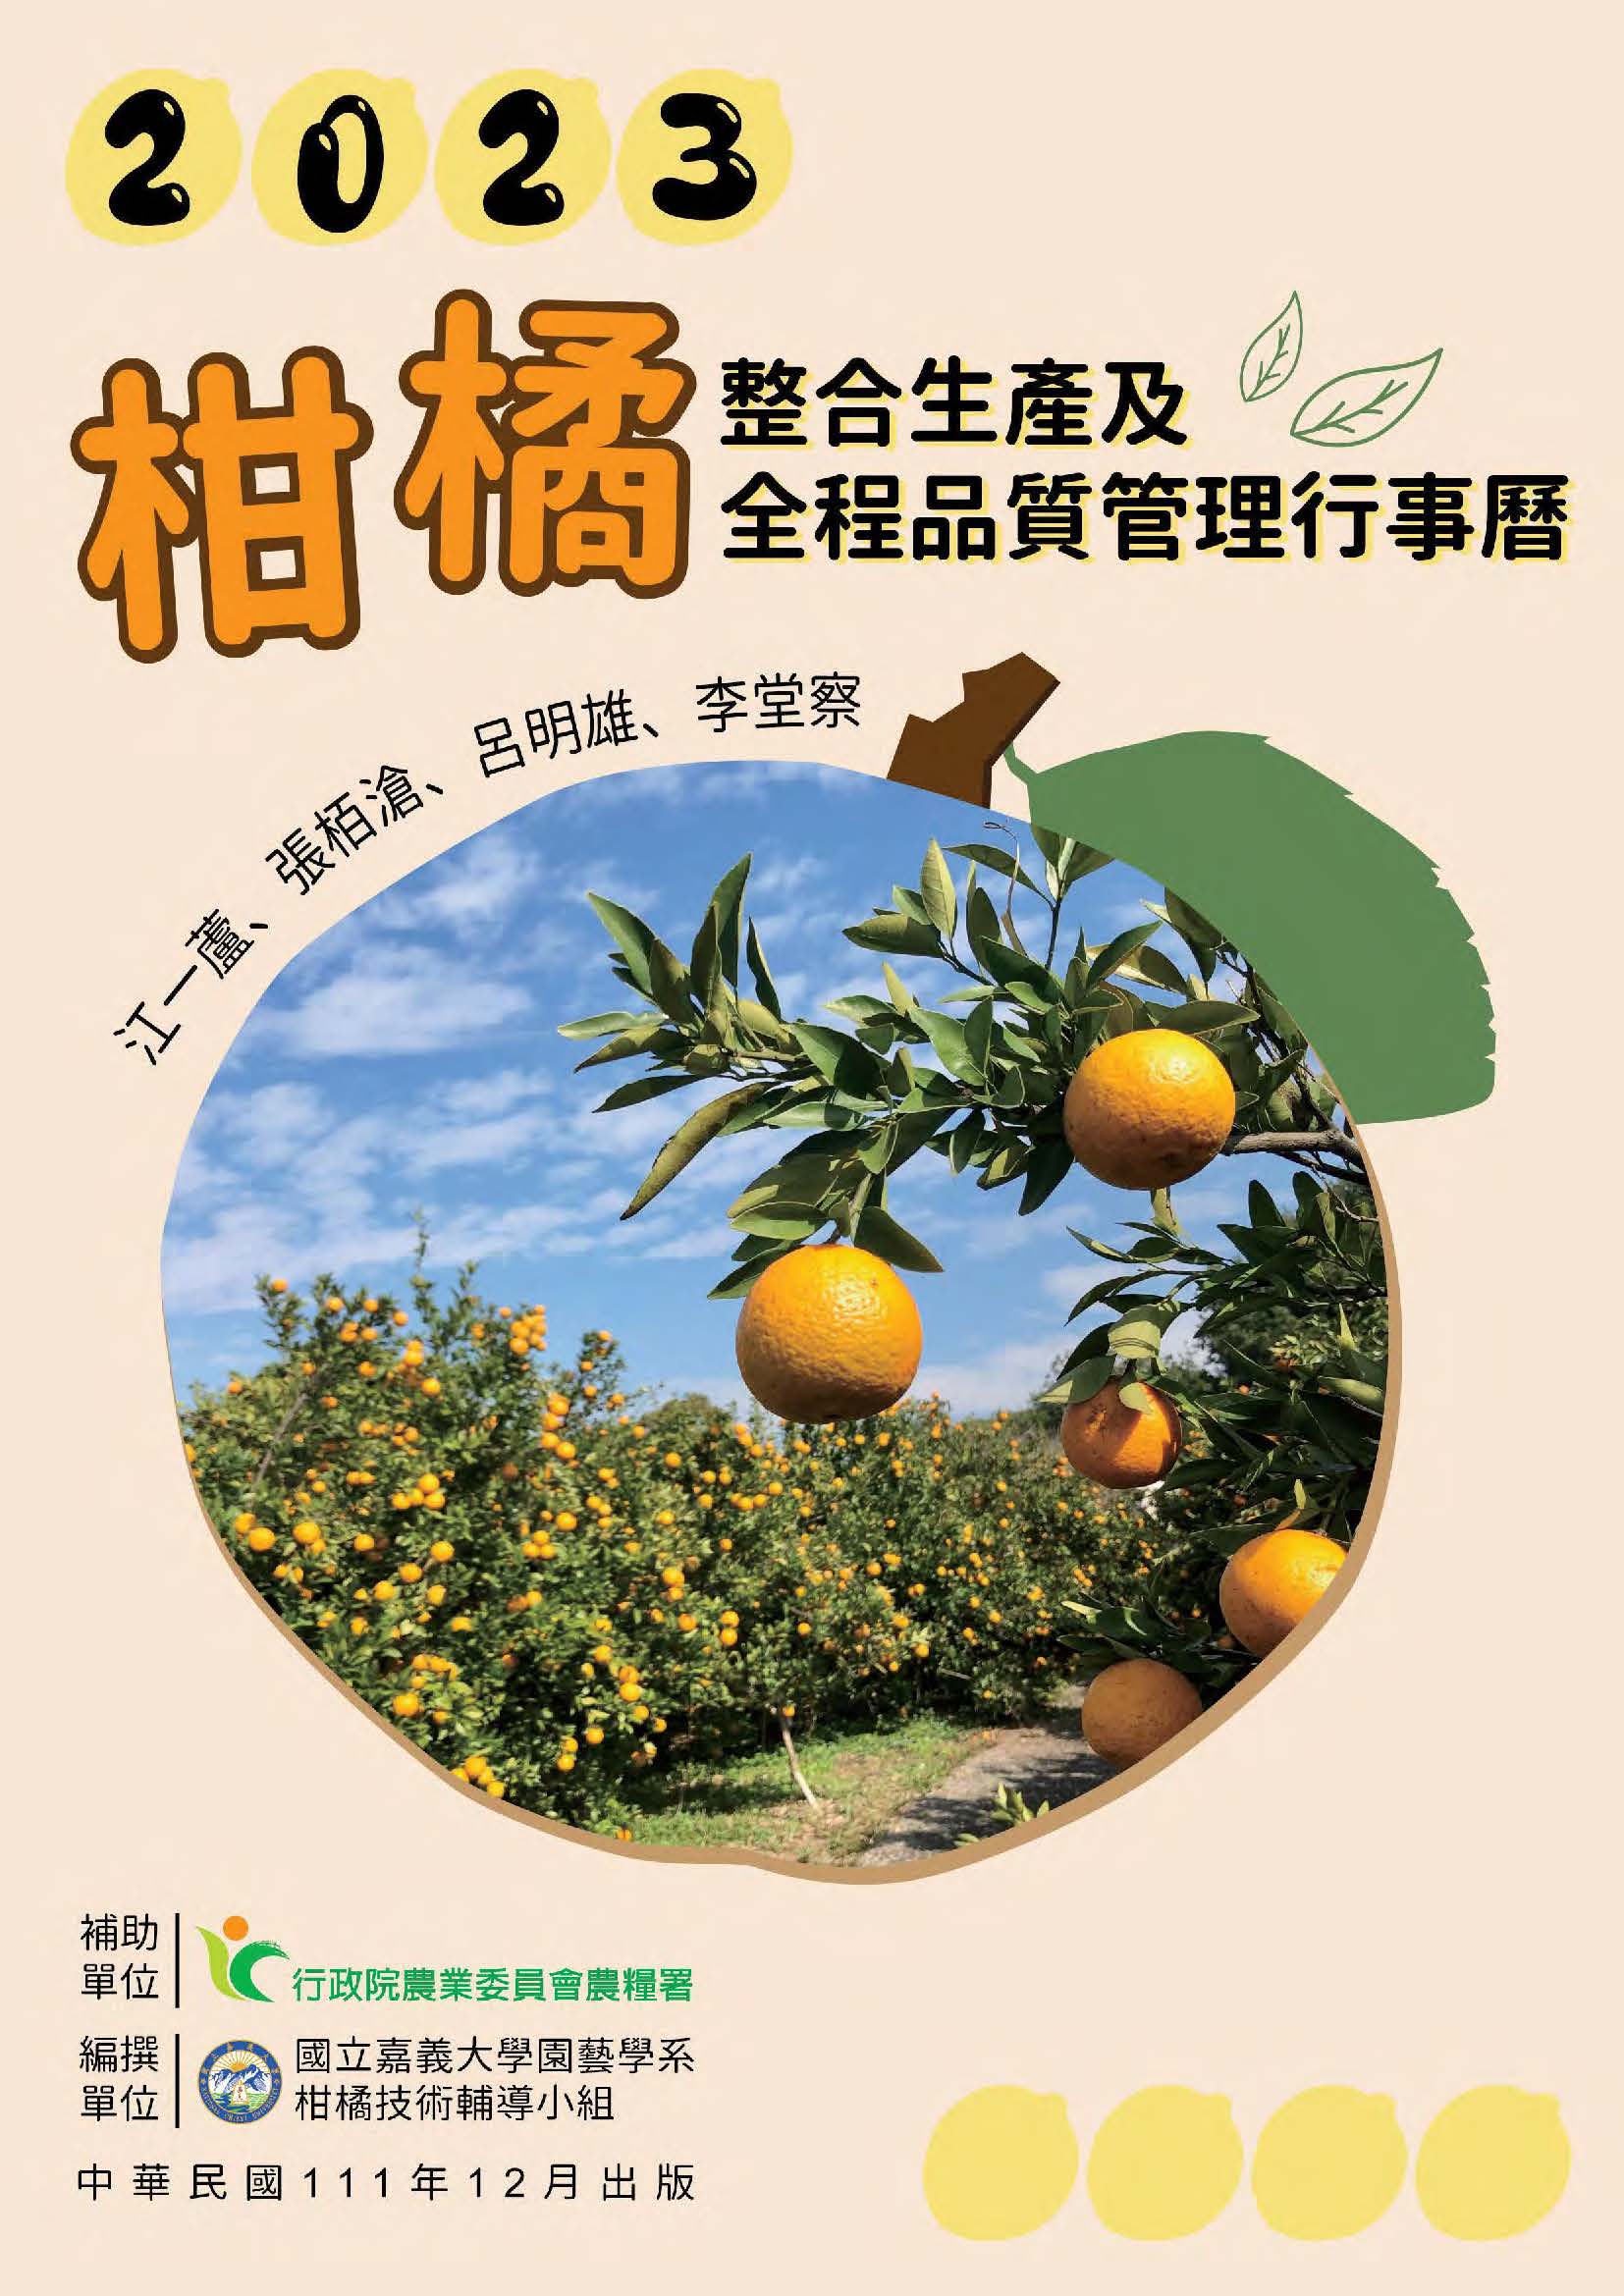 柑橘整合生產及全程品質管理行事曆. 2023年